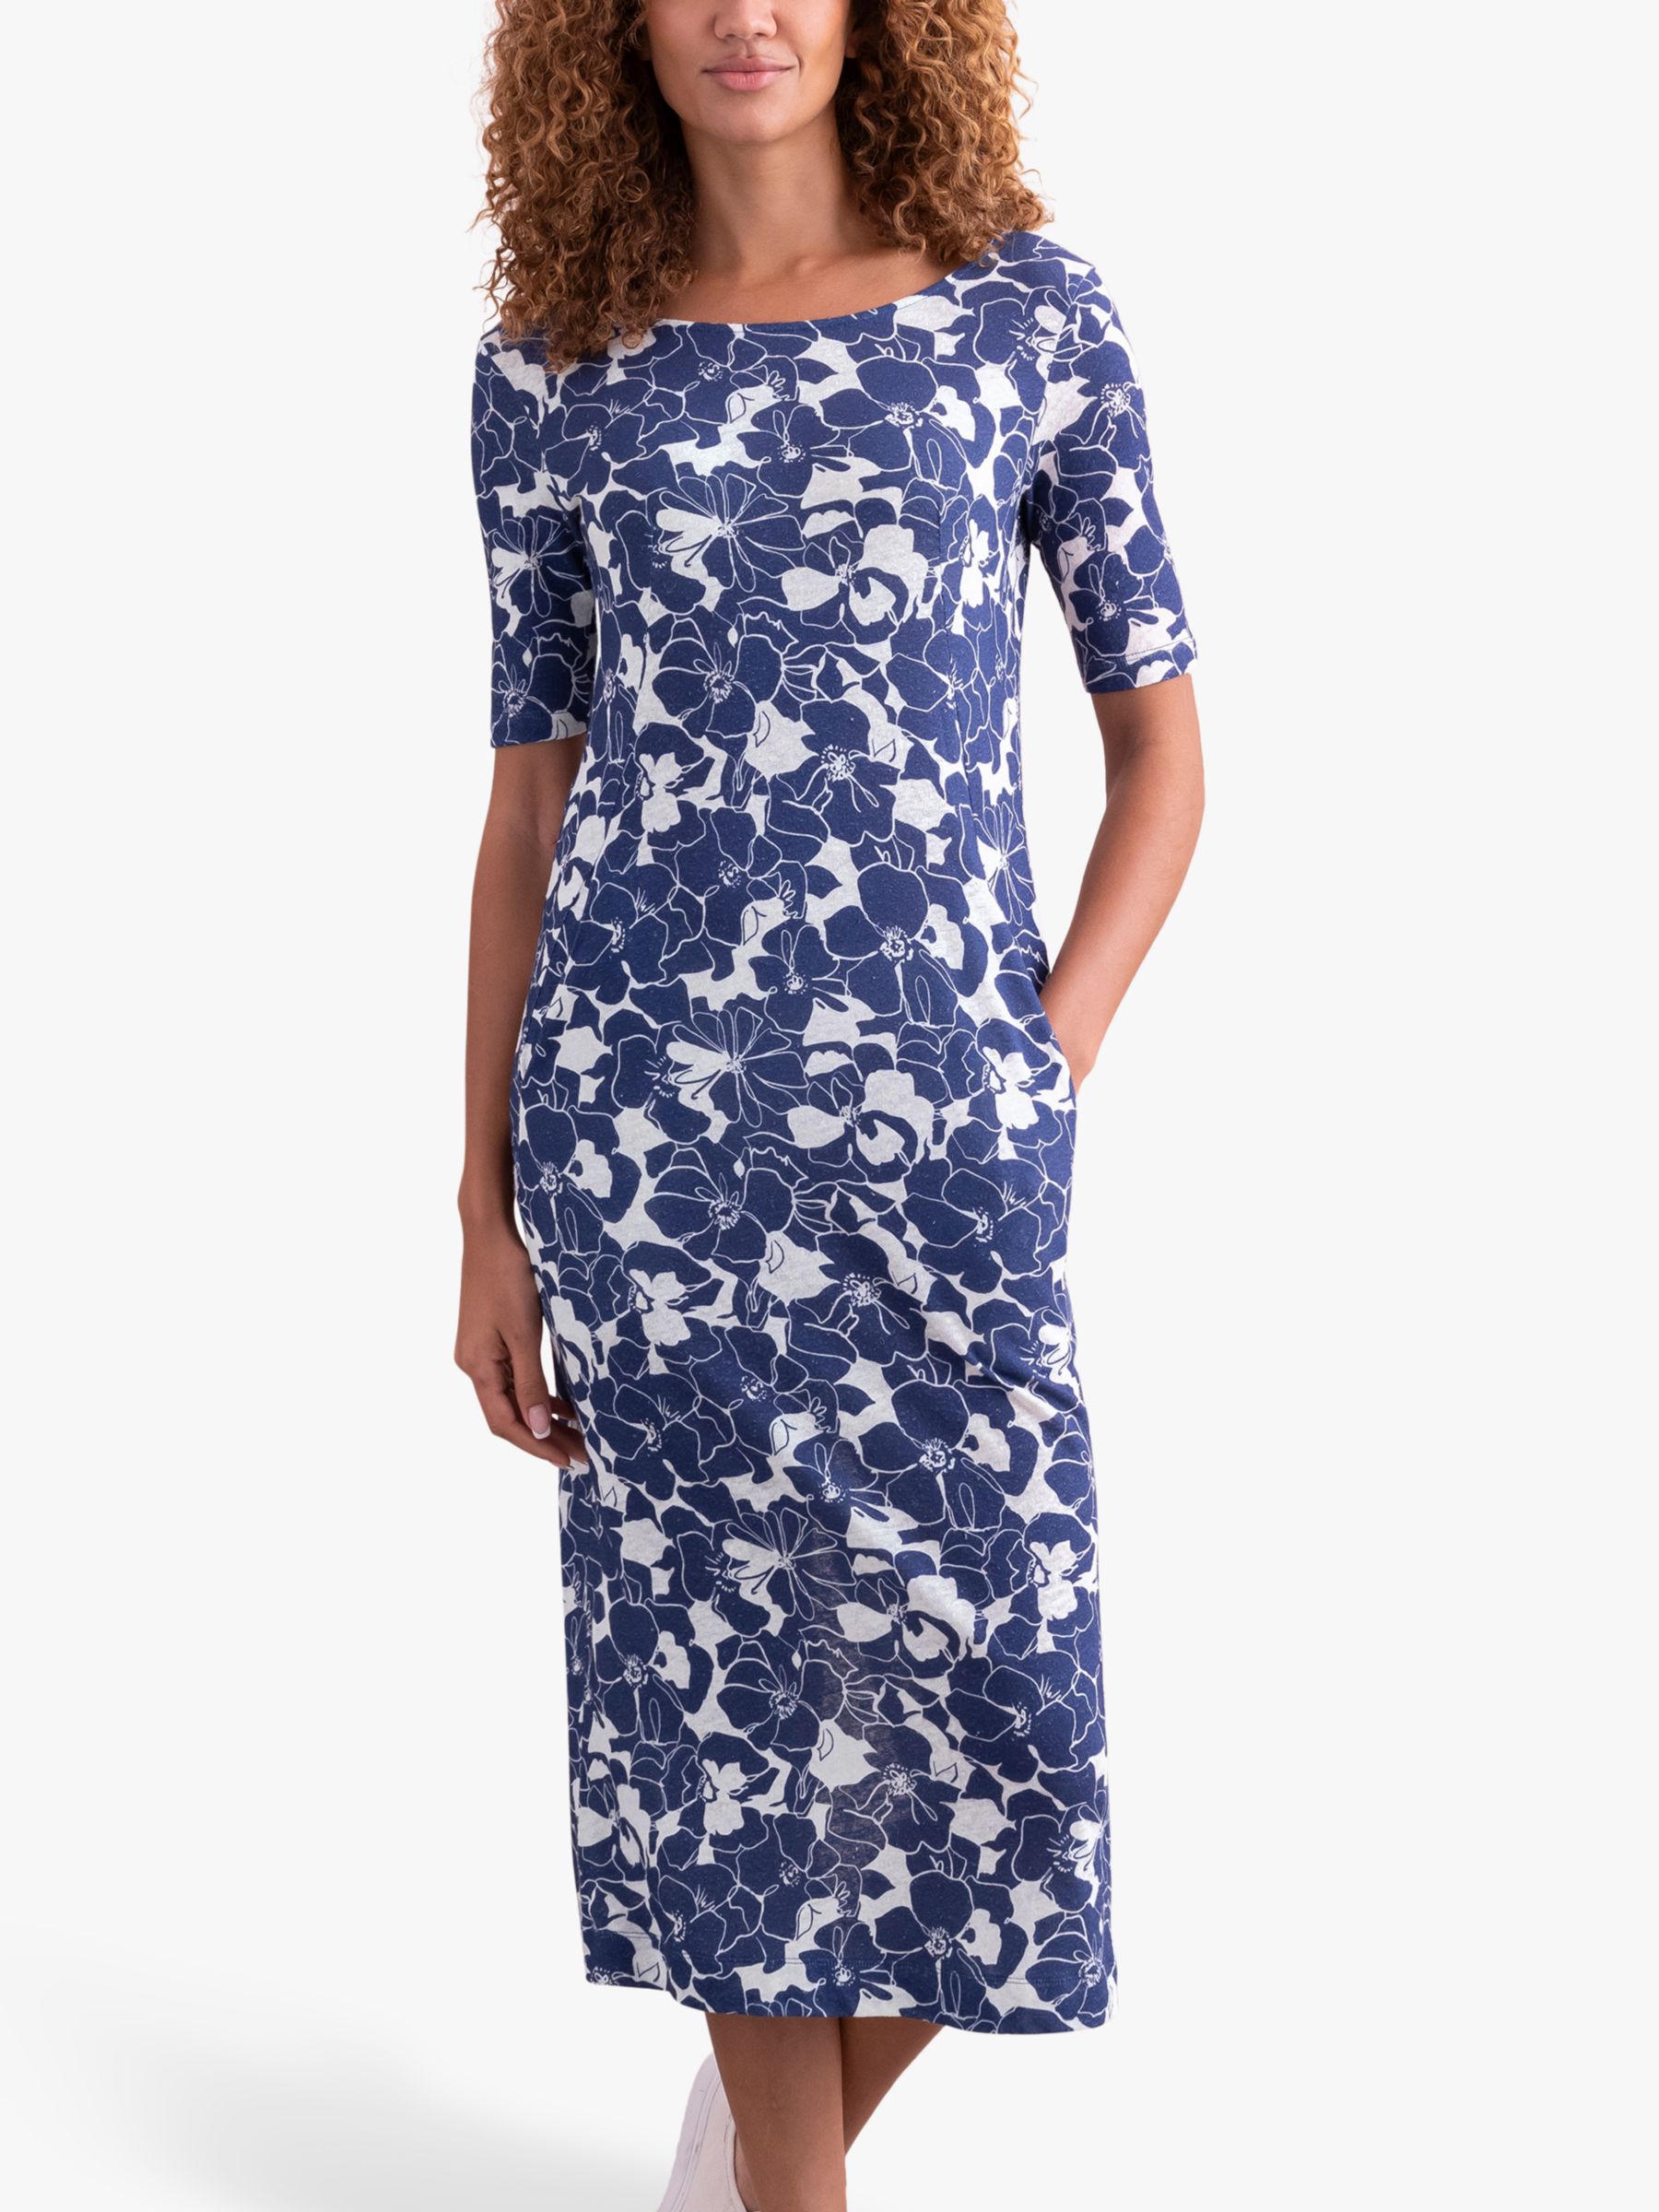 Celtic & Co. Organic Cotton Blend Button Back Dress, Blue Linear Floral, 18